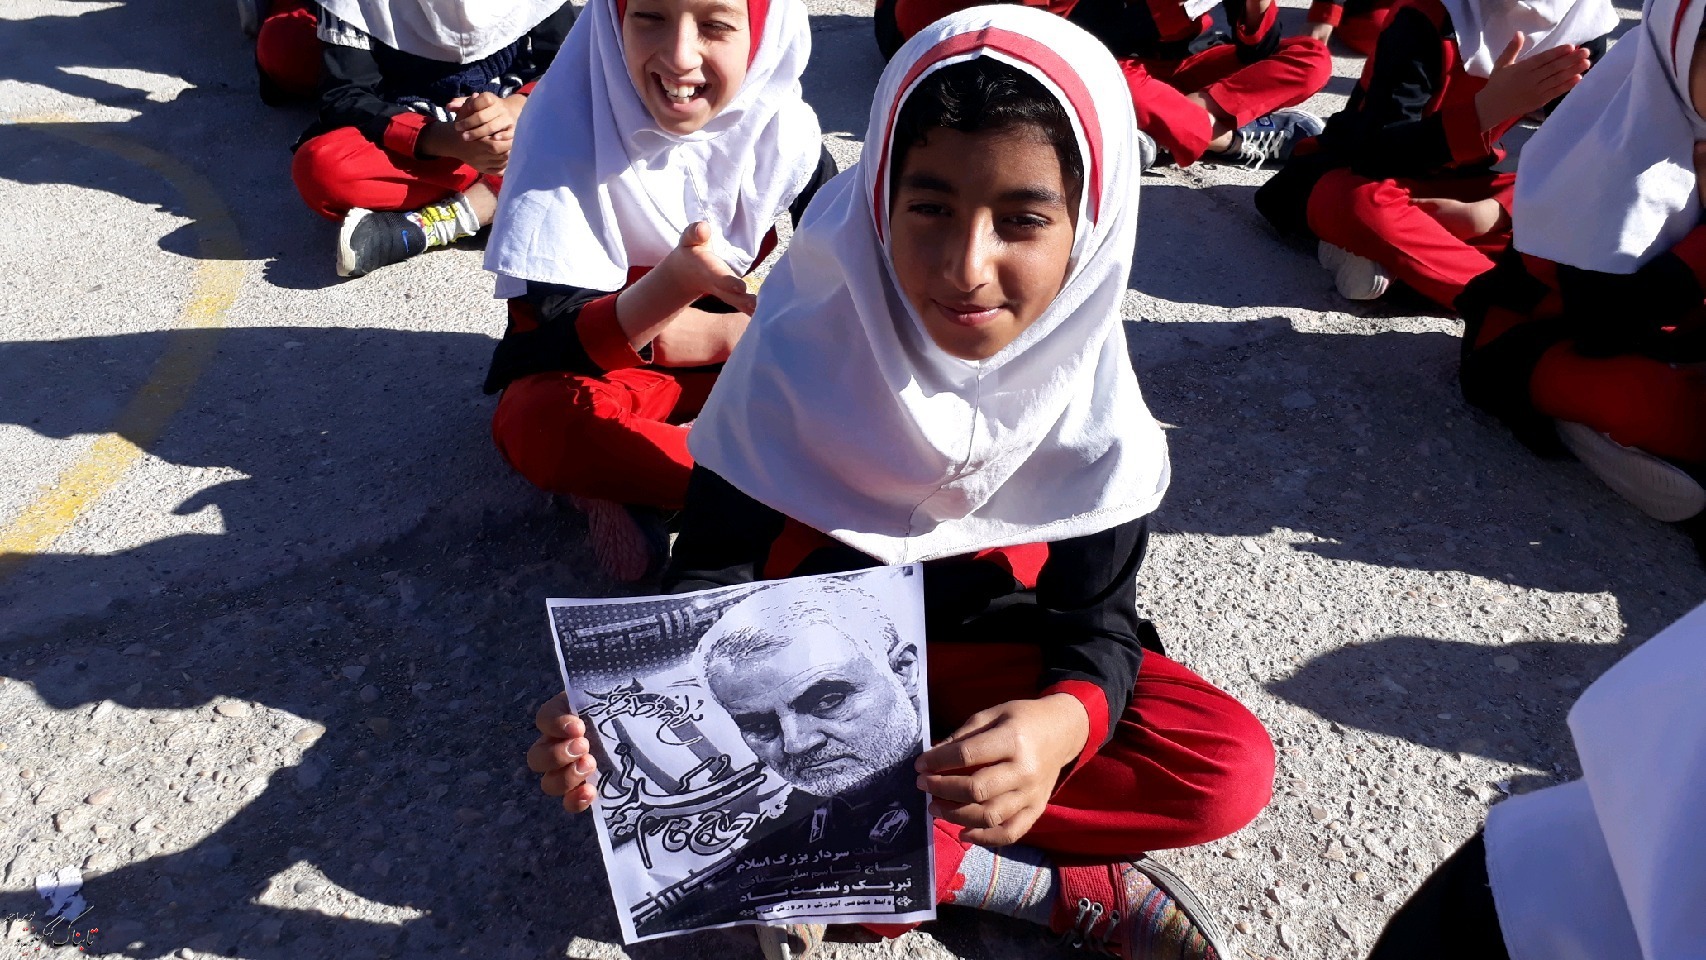 سوگواره سردار دلها در مدرسه انقلاب لنده+گزارش تصویری